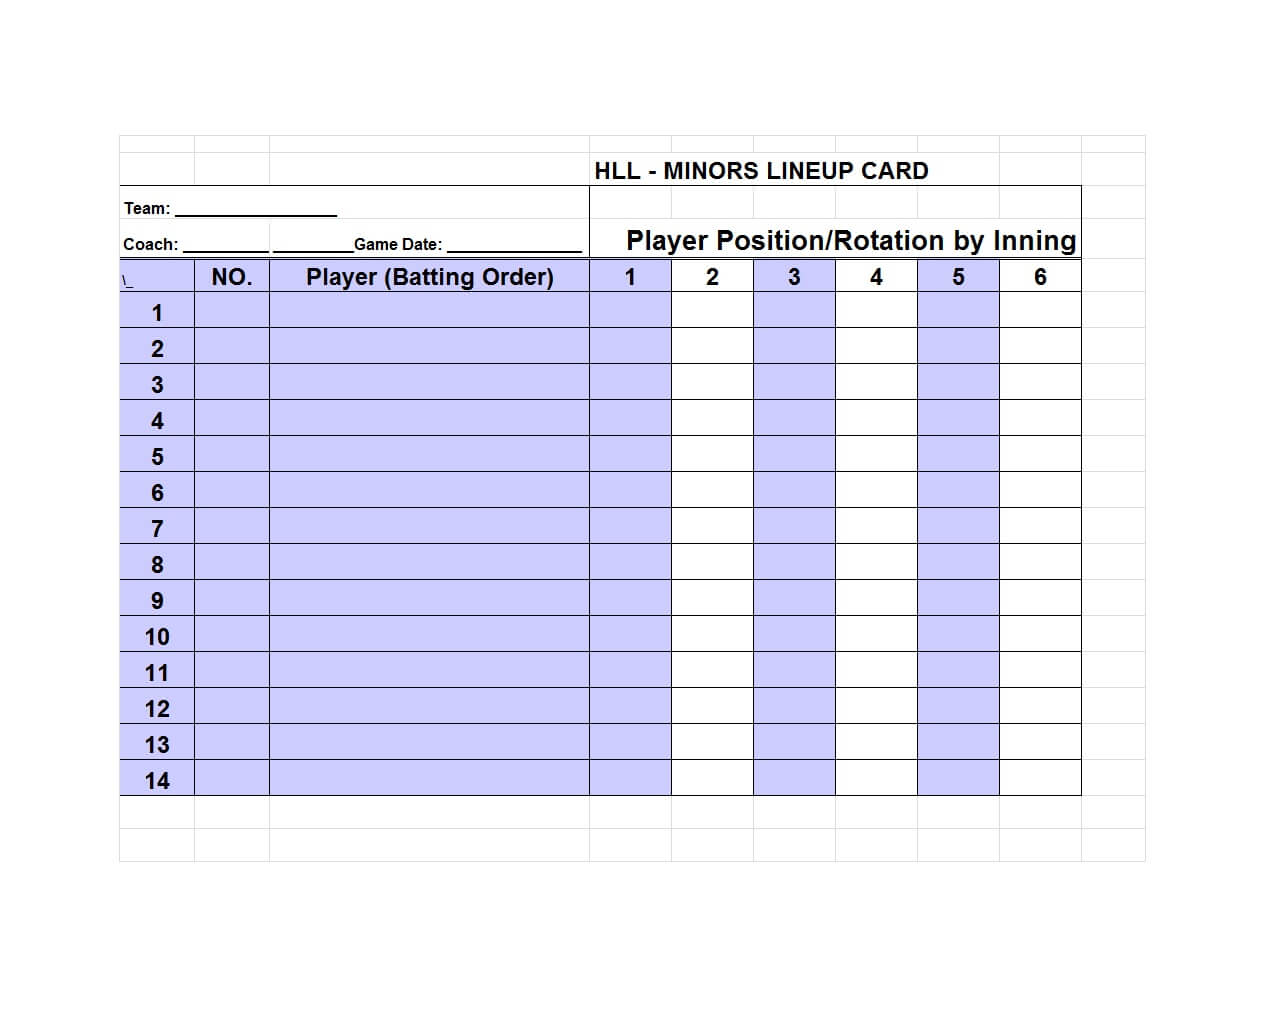 33 Printable Baseball Lineup Templates [Free Download] ᐅ With Free Baseball Lineup Card Template